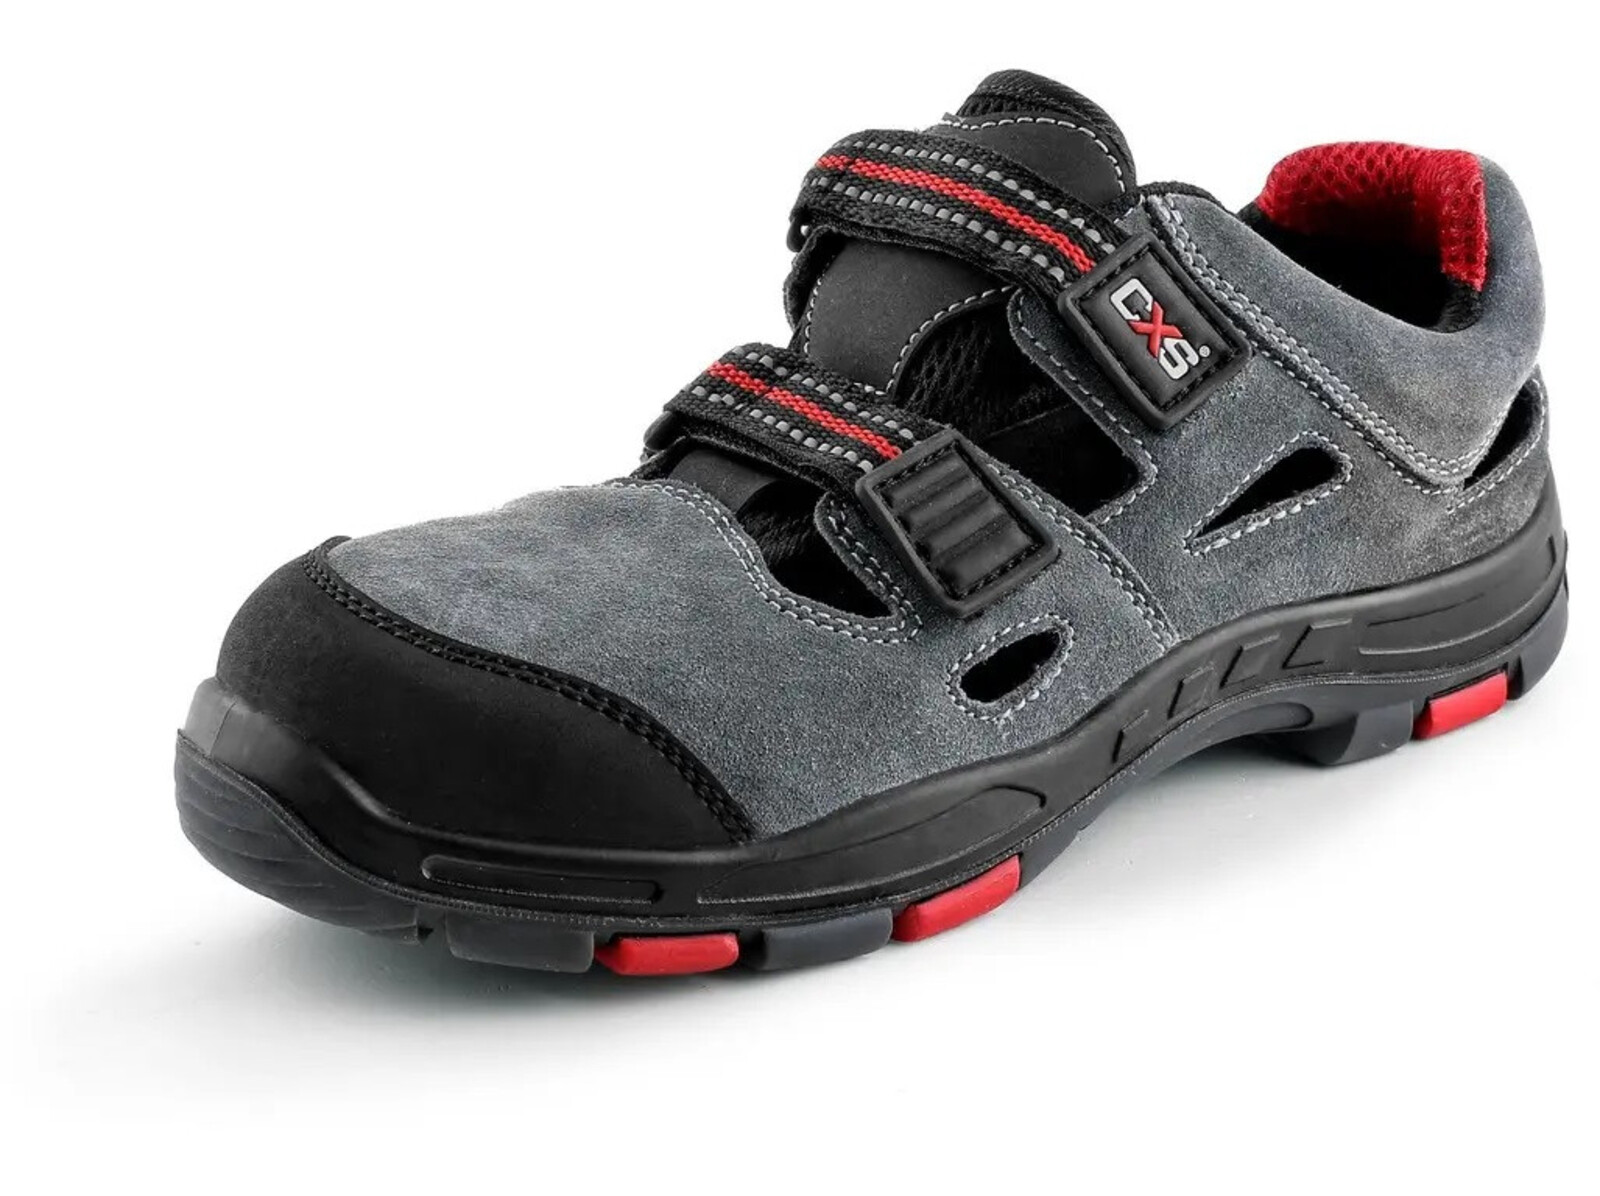 Pracovné sandále CXS Rock Phyllite O1 FO HRO SRA MF - veľkosť: 47, farba: sivá/červená